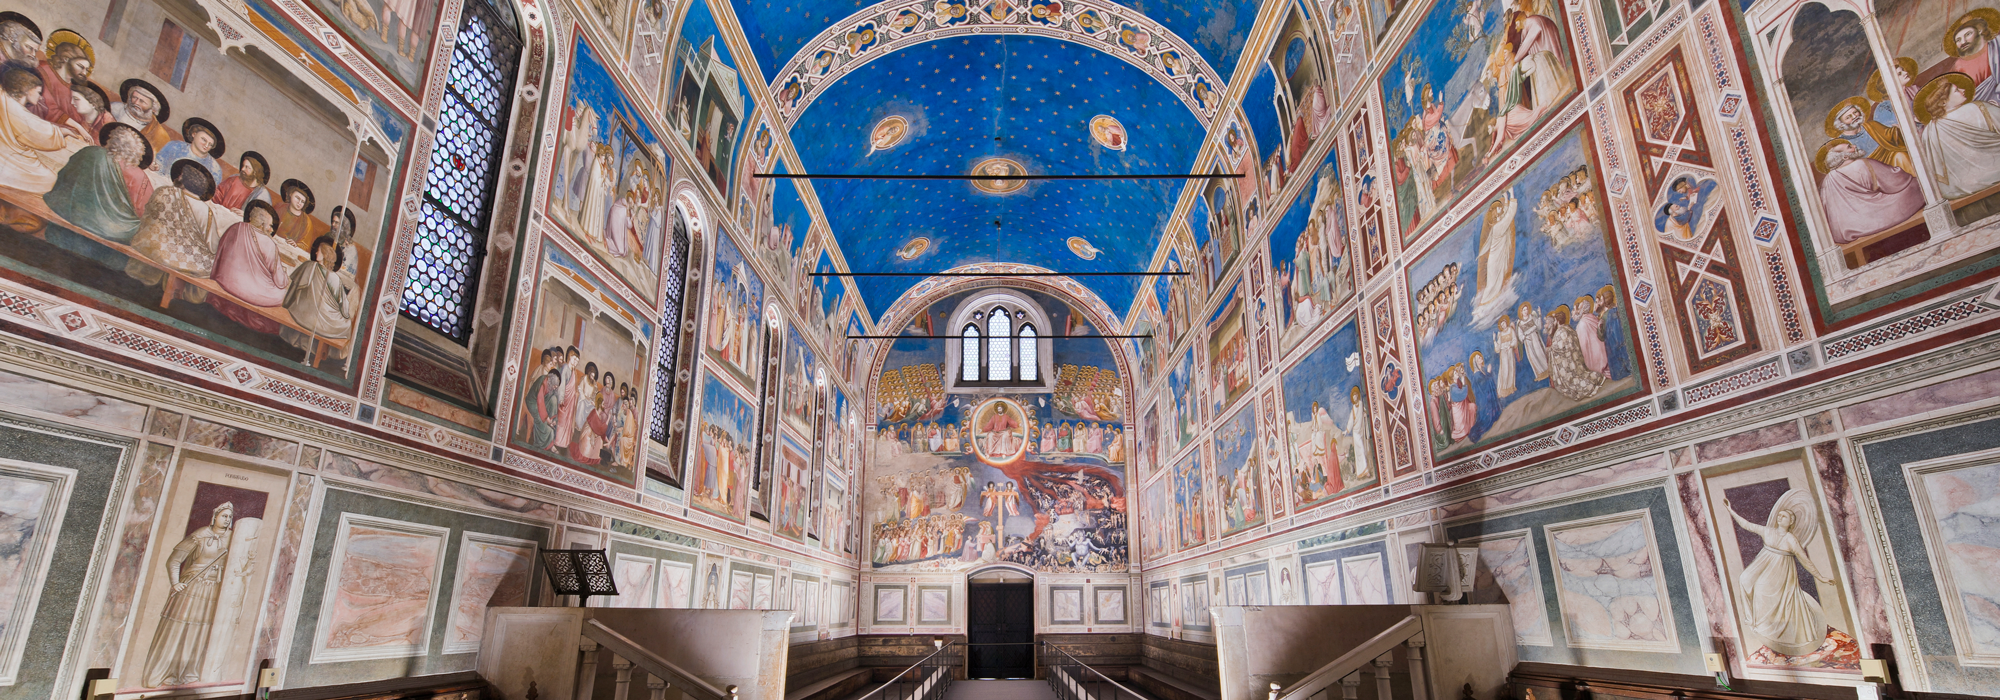 La Cappella degli Scrovegni - Padova, Italia